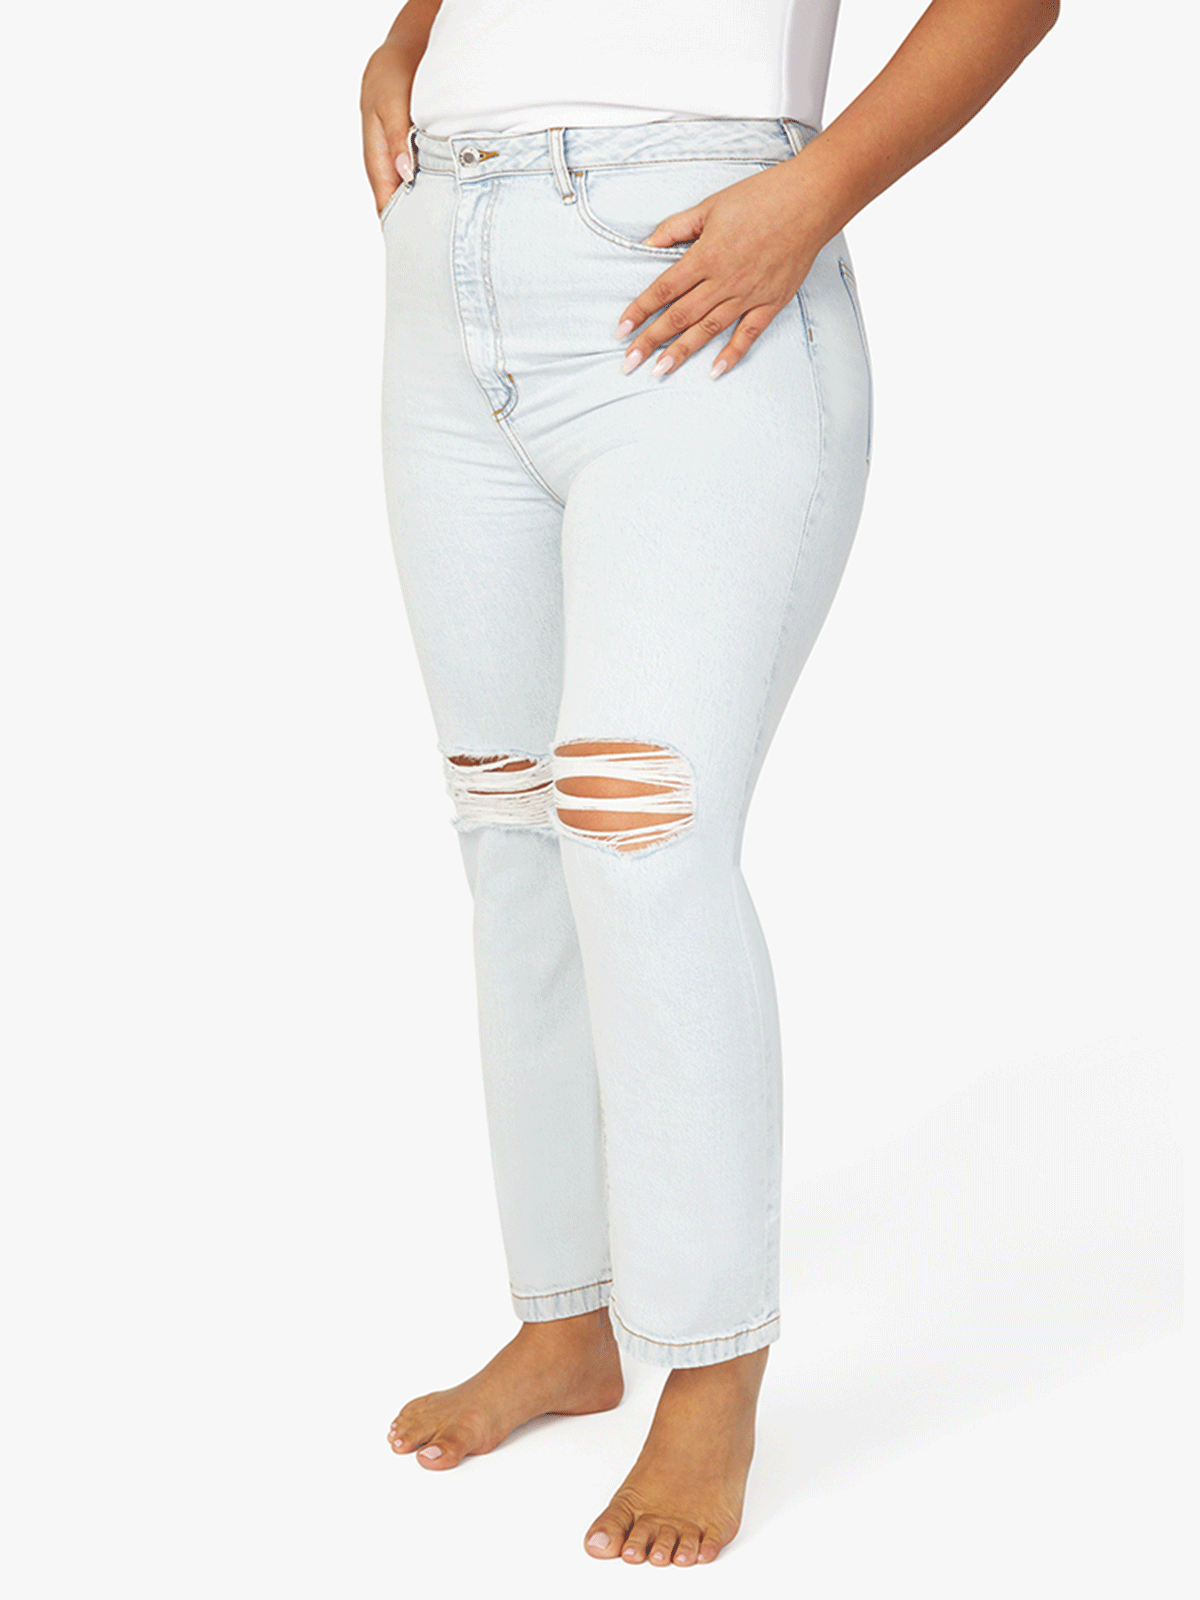 מכנסי ג'ינס בגזרה גבוהה ישרה עם קרעים- We Wore What|וי וור וואט